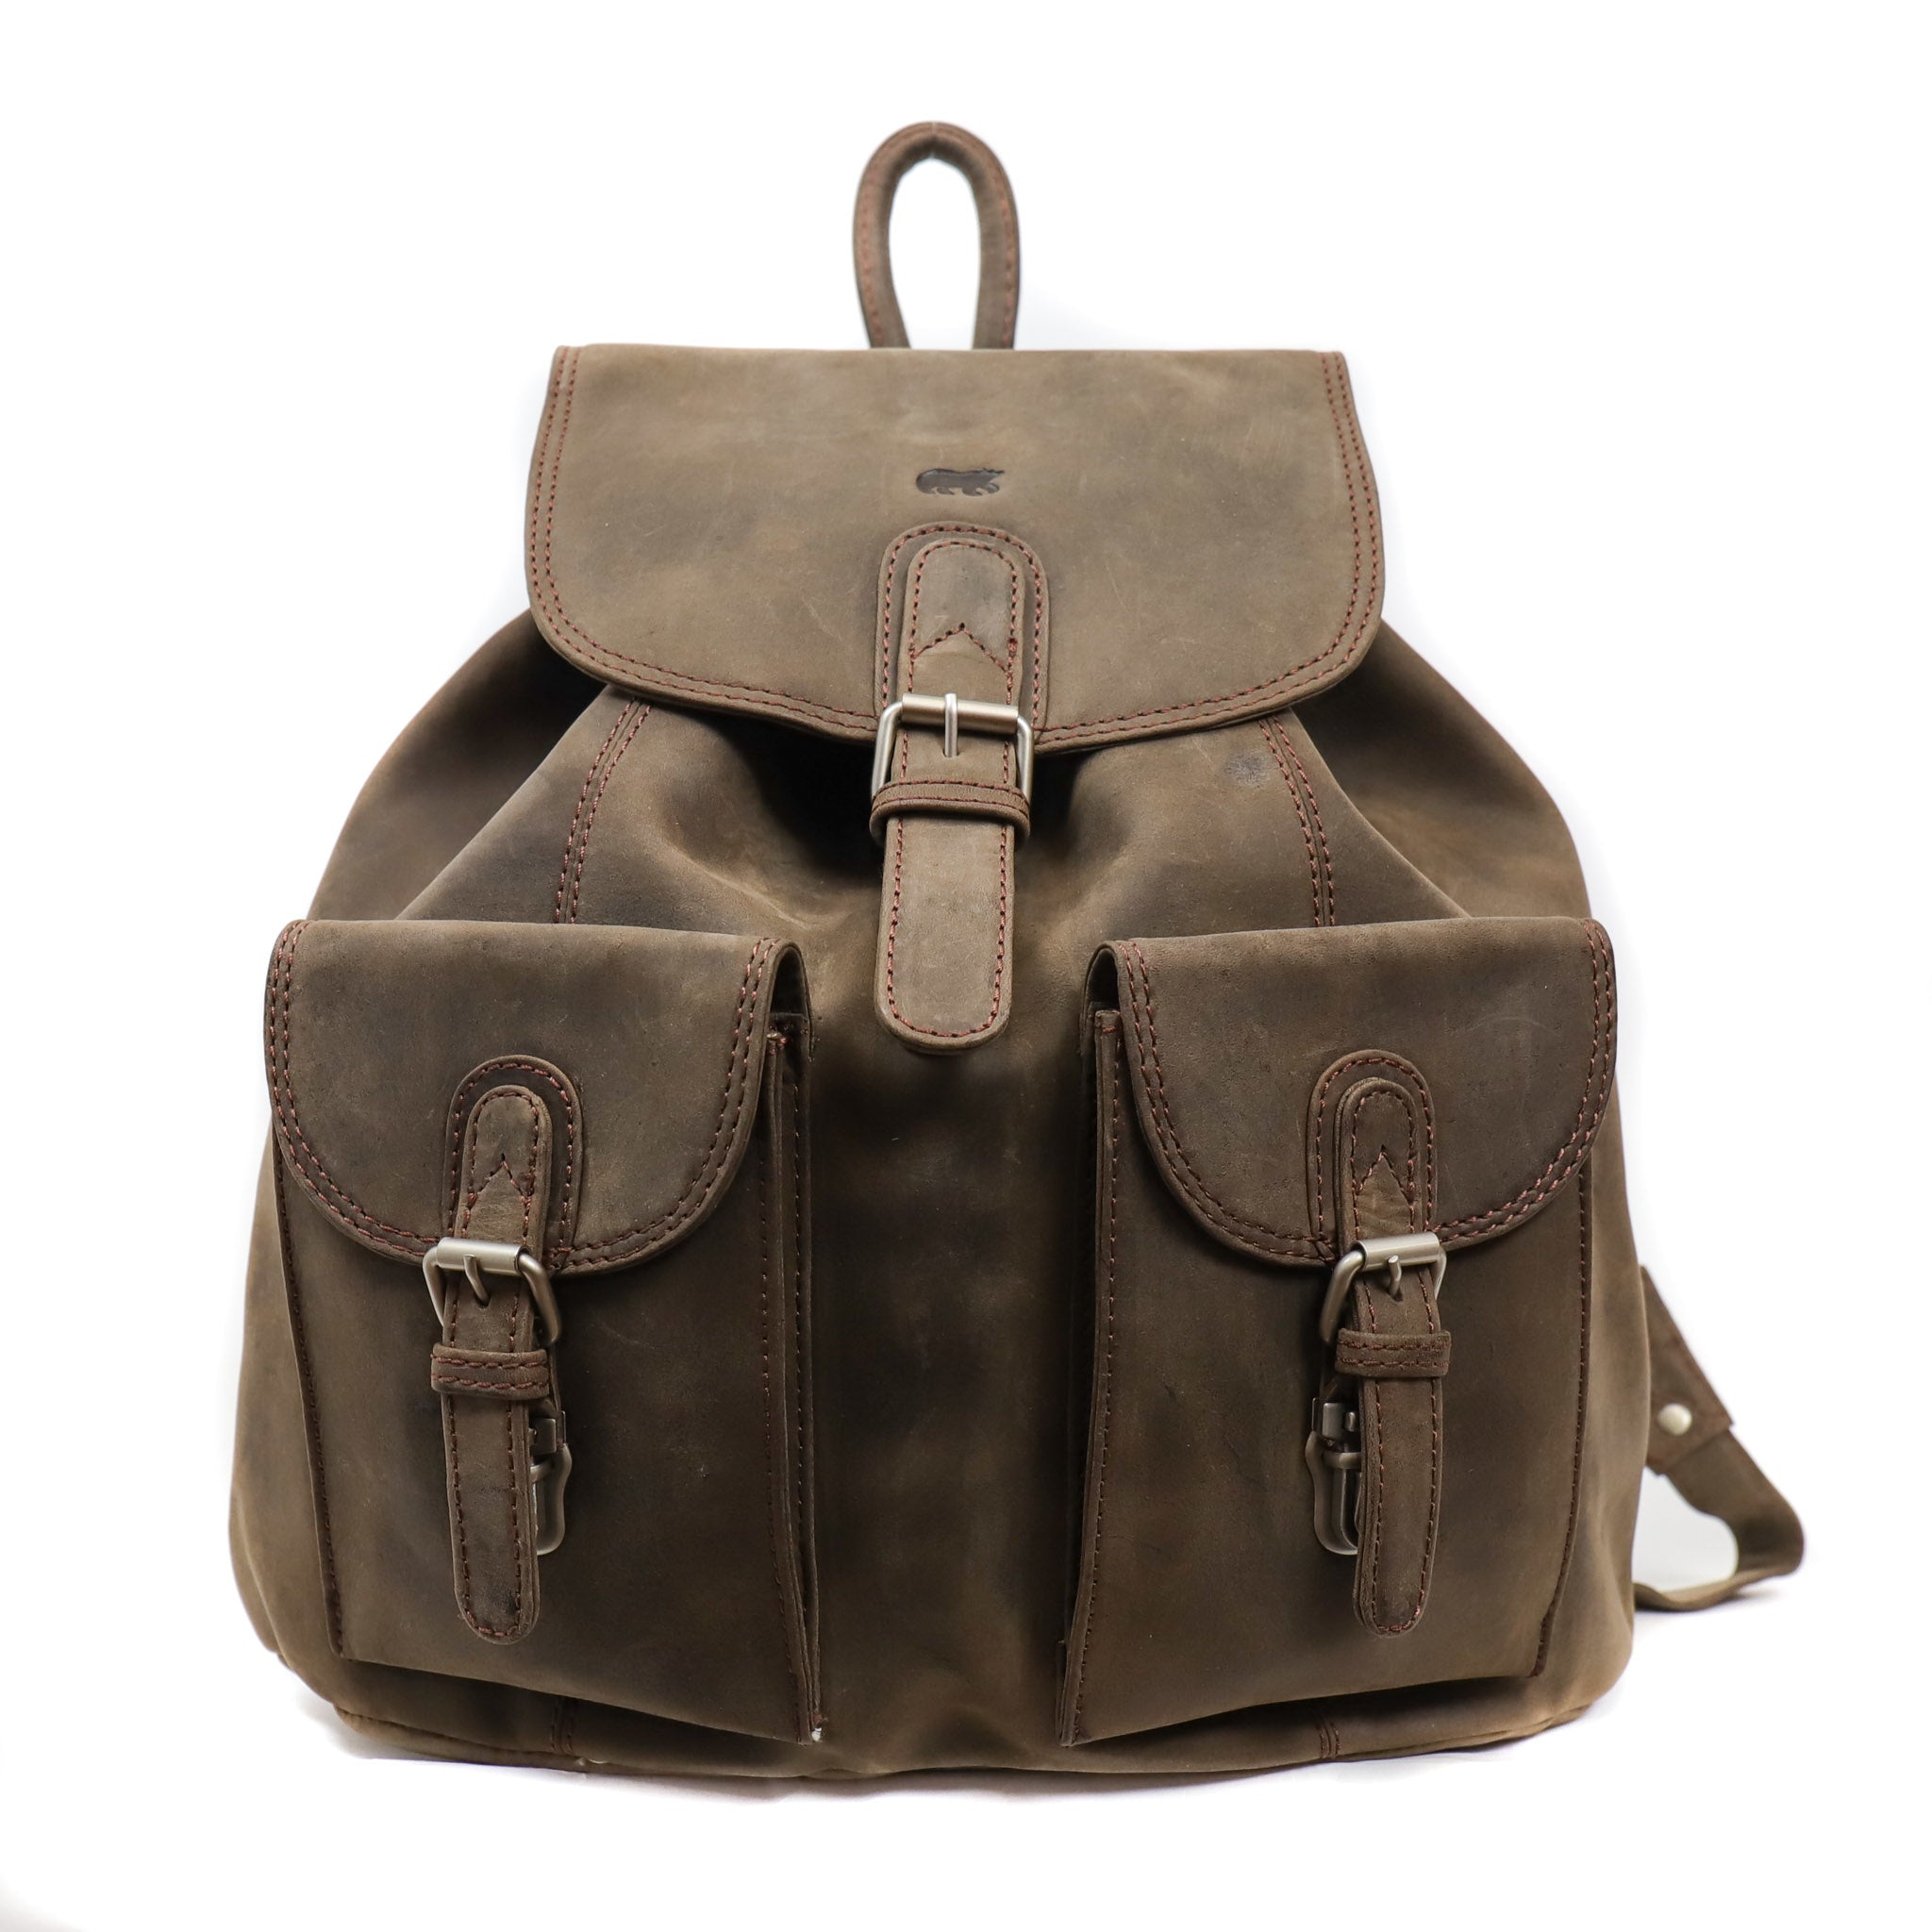 Backpack 'Charlie' brown - HD 5388